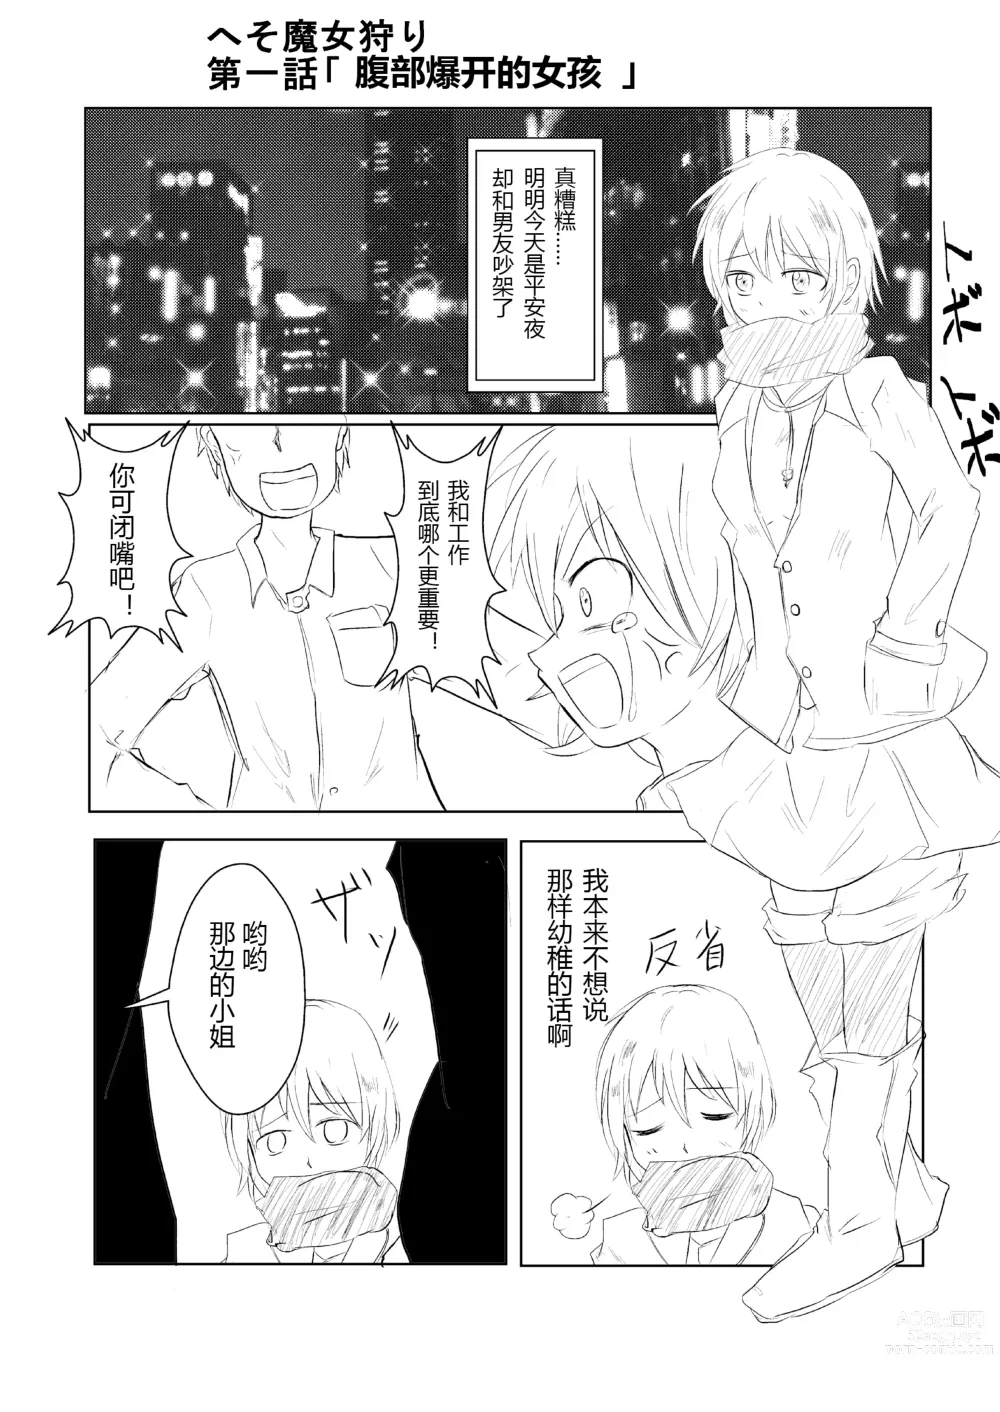 Page 1 of doujinshi hesomazixyo1